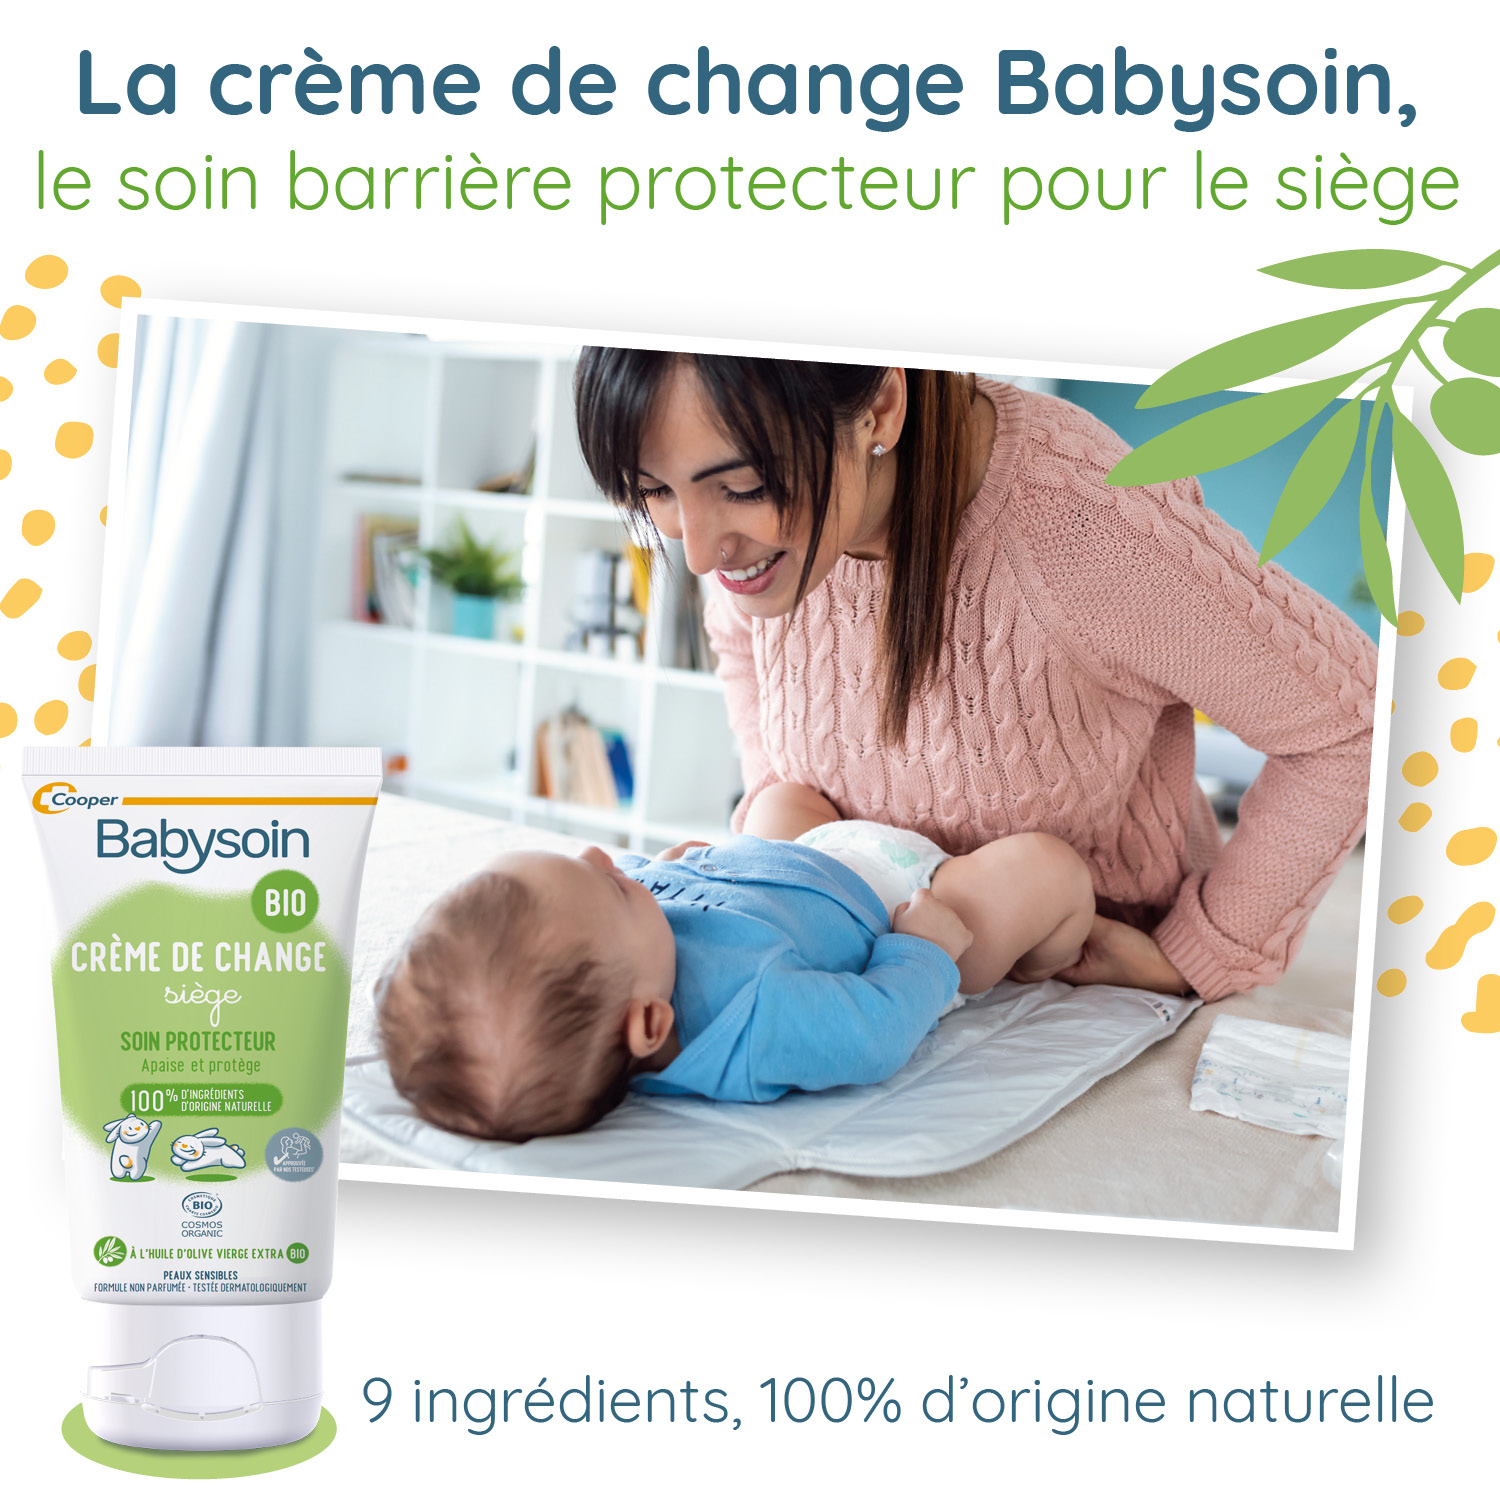 La crème de change, ce produit miracle pour les fesses de votre bébé - JOONE